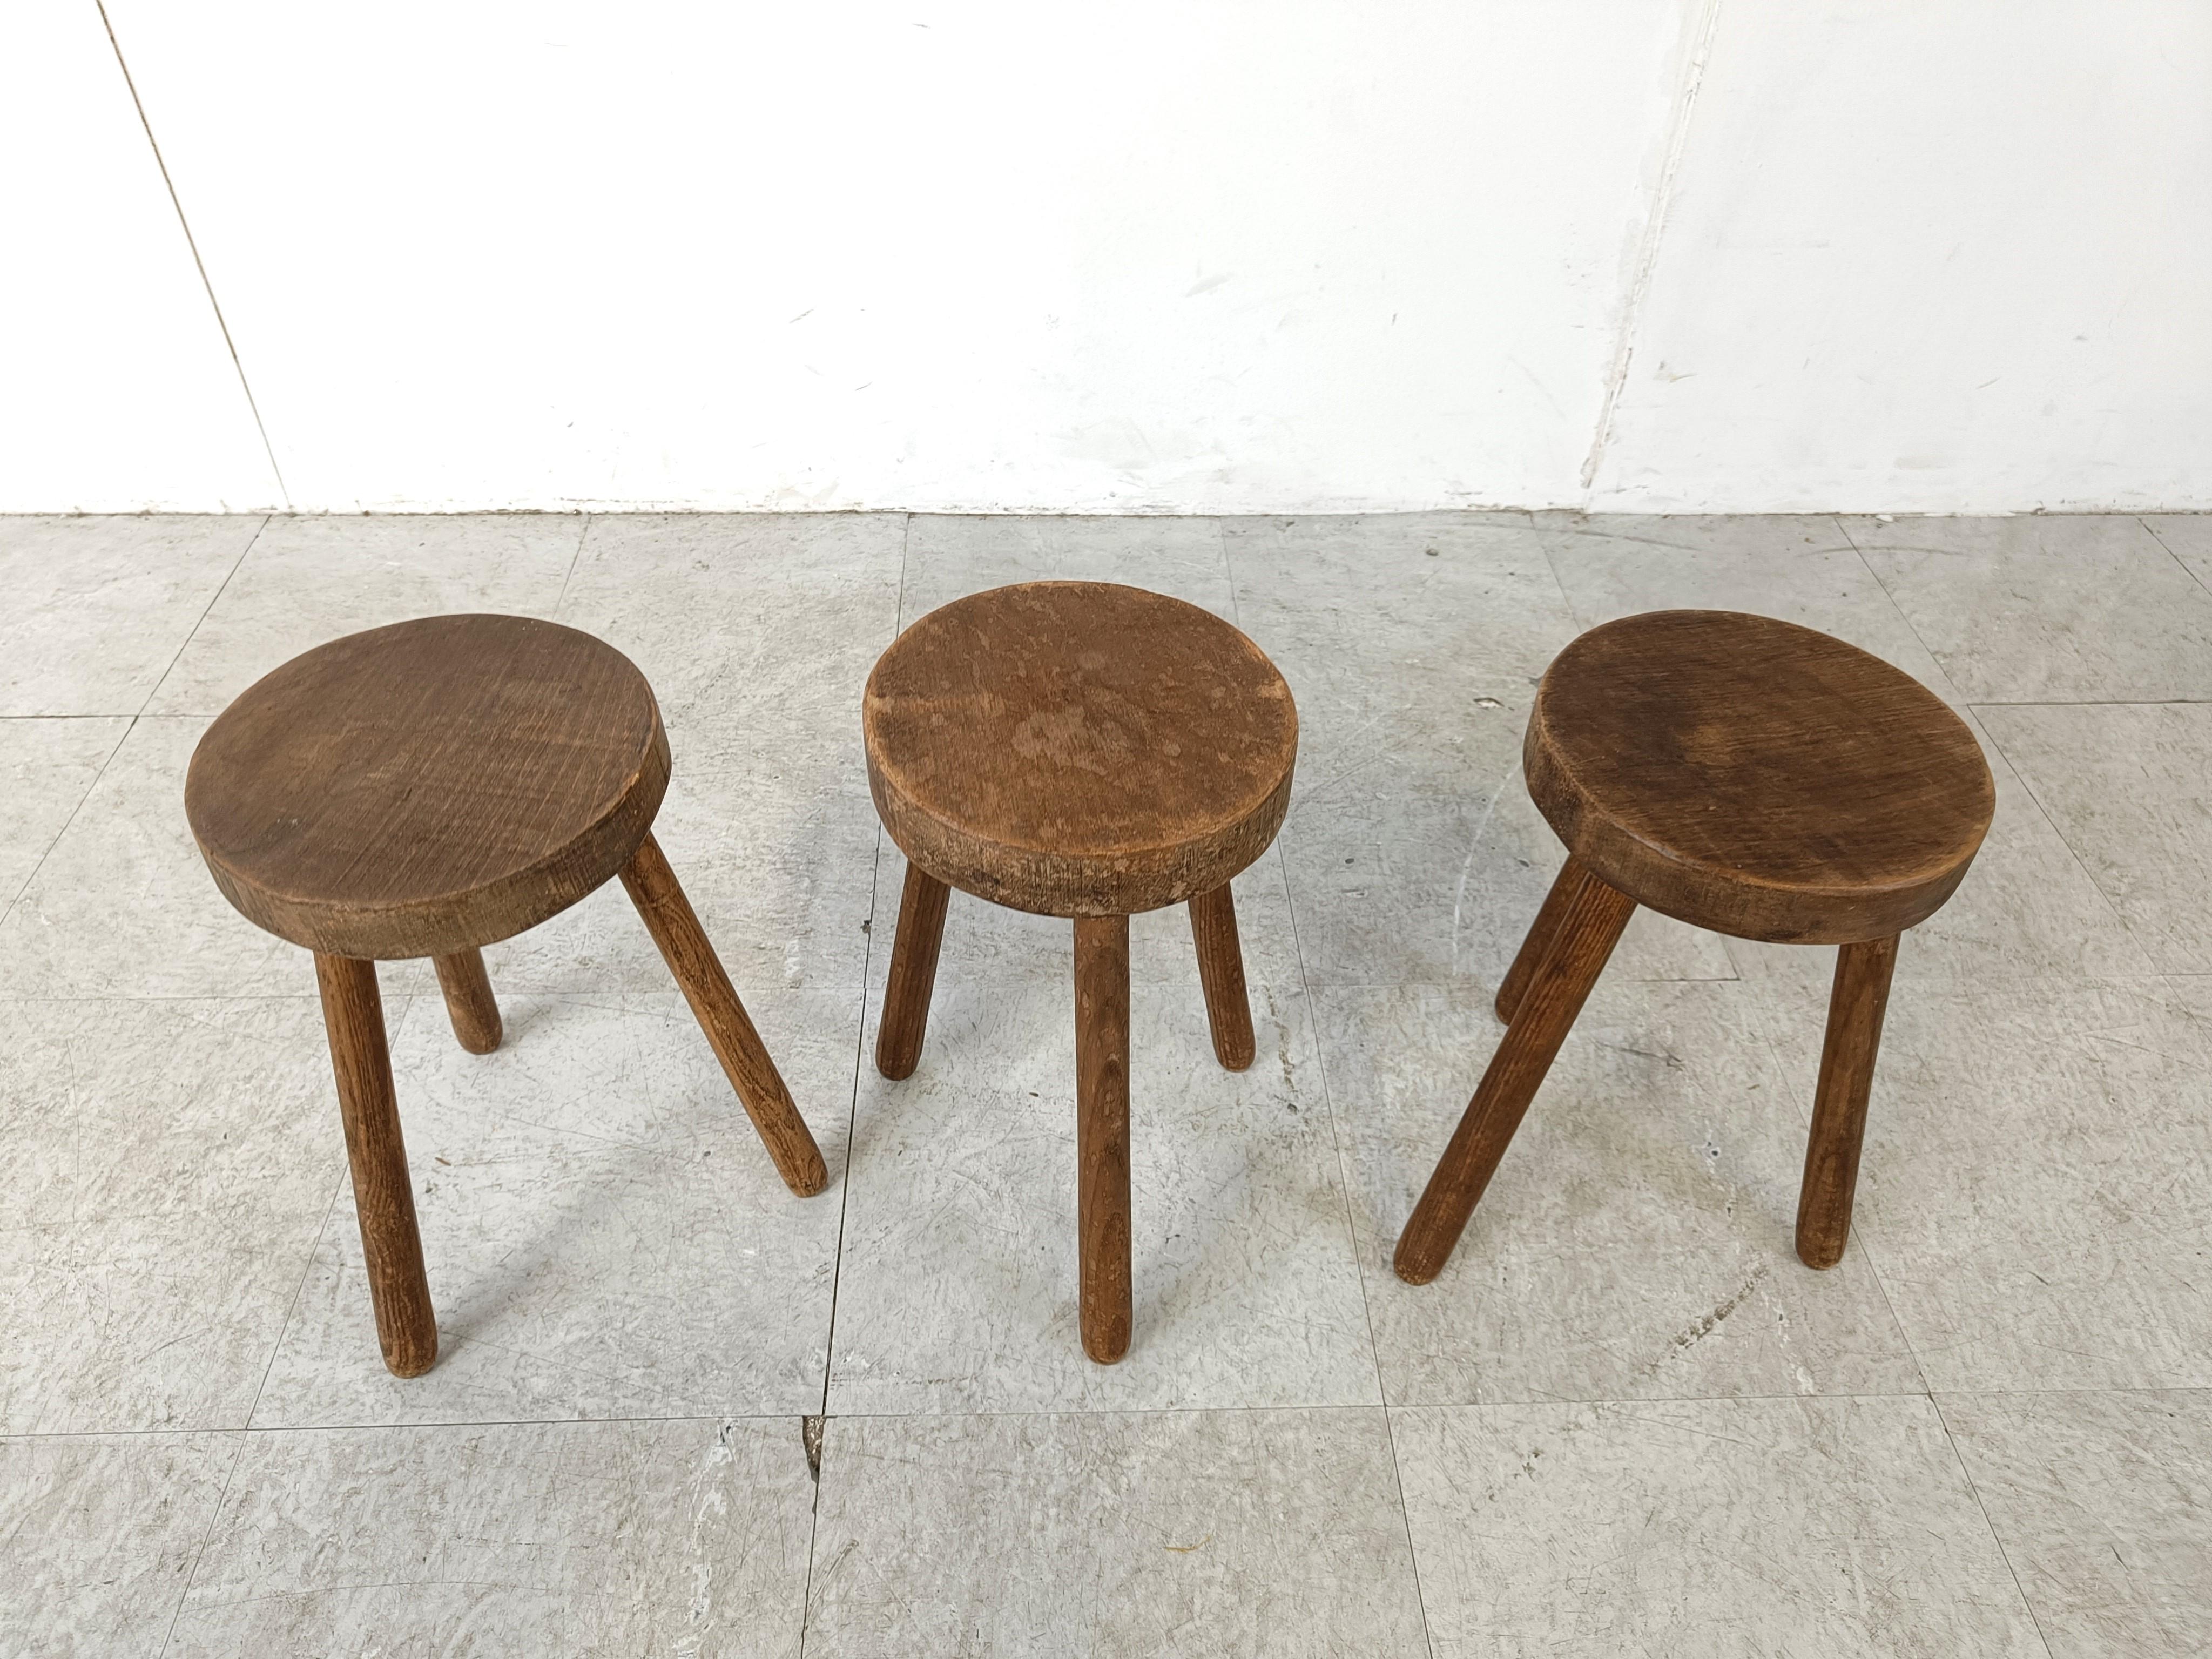 Vintage farmer stools, set of 3 11